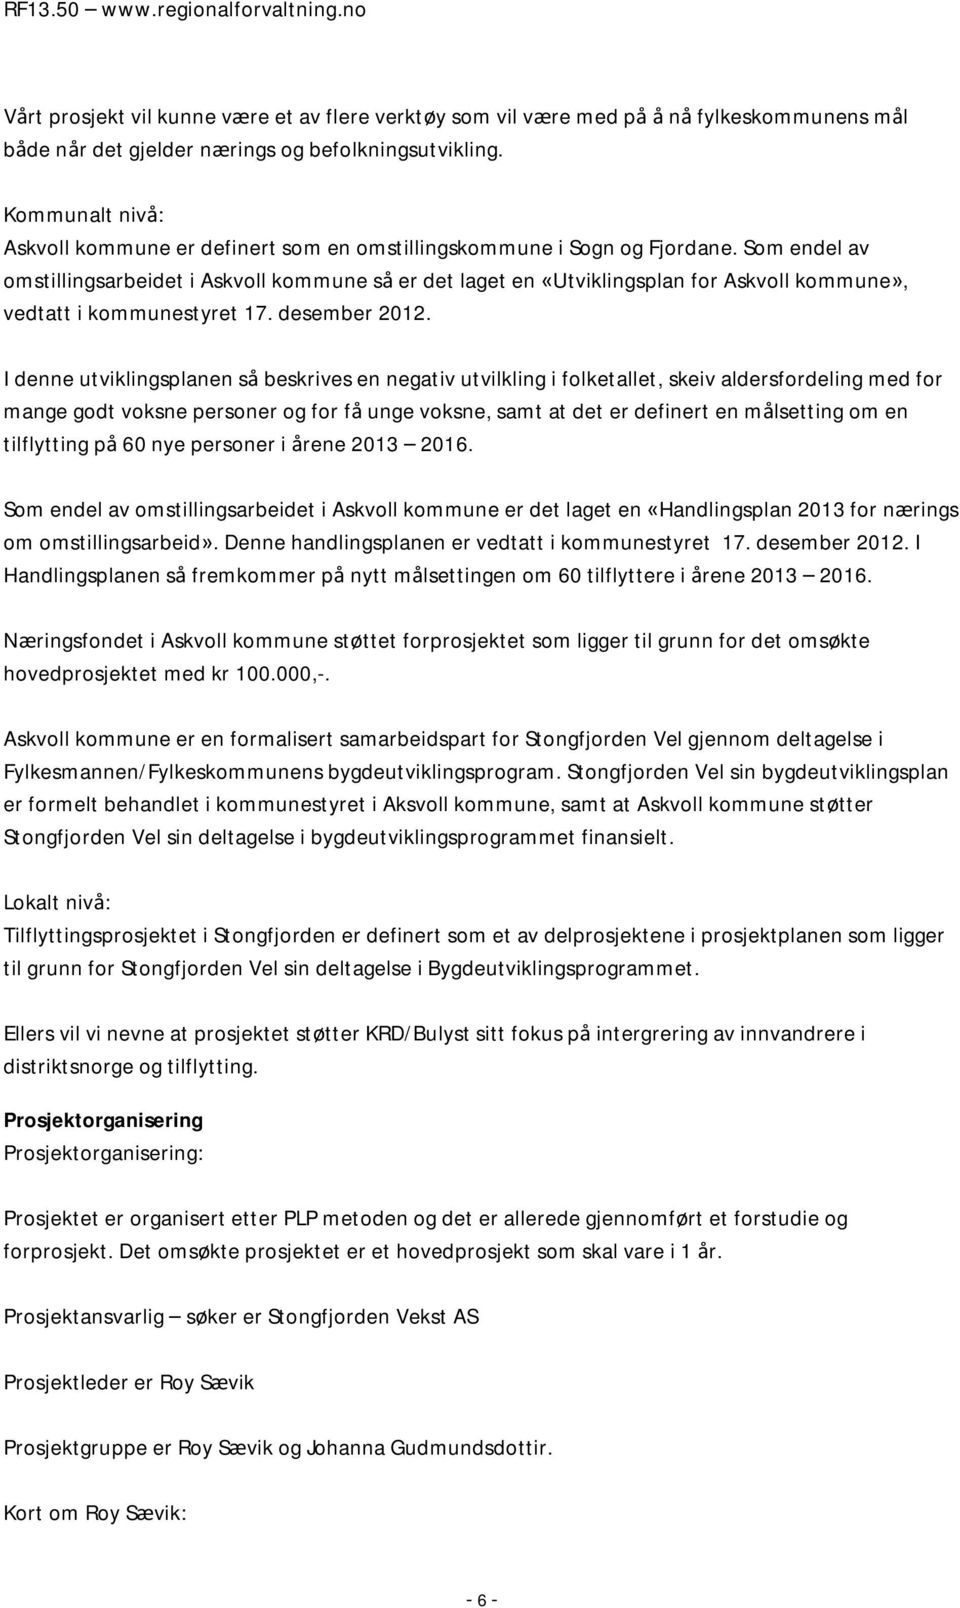 Som endel av omstillingsarbeidet i Askvoll kommune så er det laget en «Utviklingsplan for Askvoll kommune», vedtatt i kommunestyret 17. desember 2012.